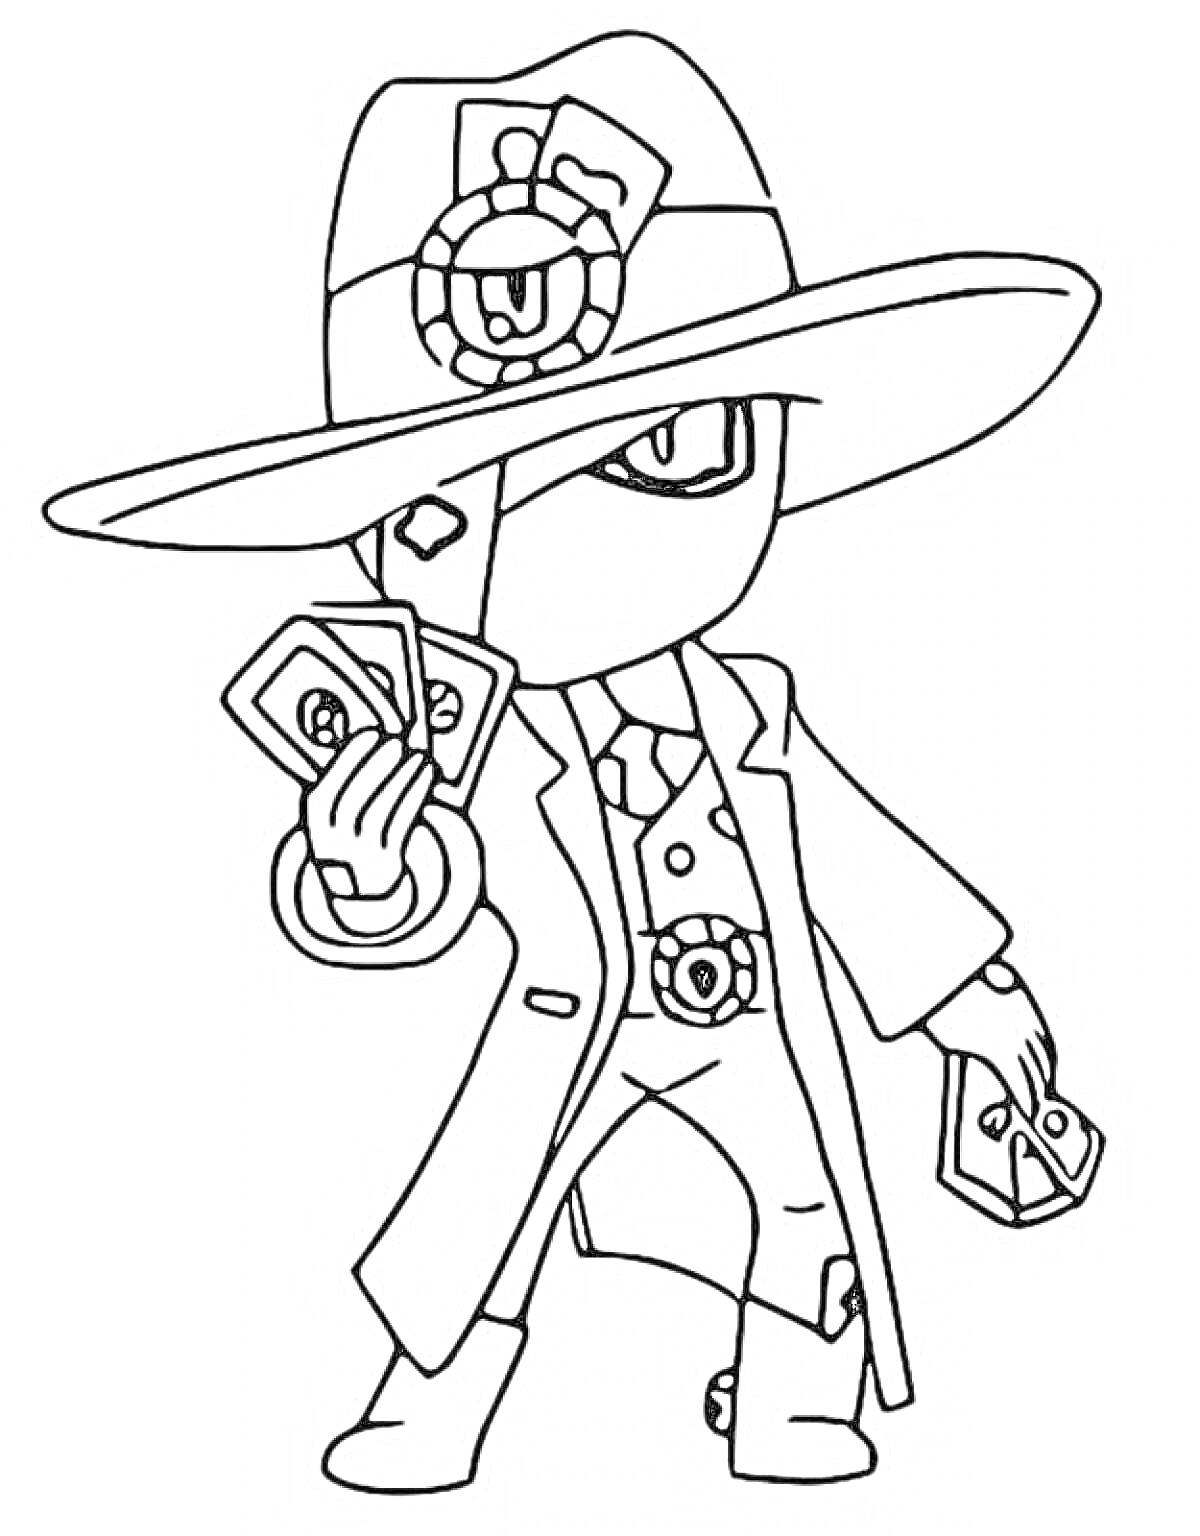 Раскраска Персонаж из игры Brawl Stars - Эдгар в шляпе, с картами в руках